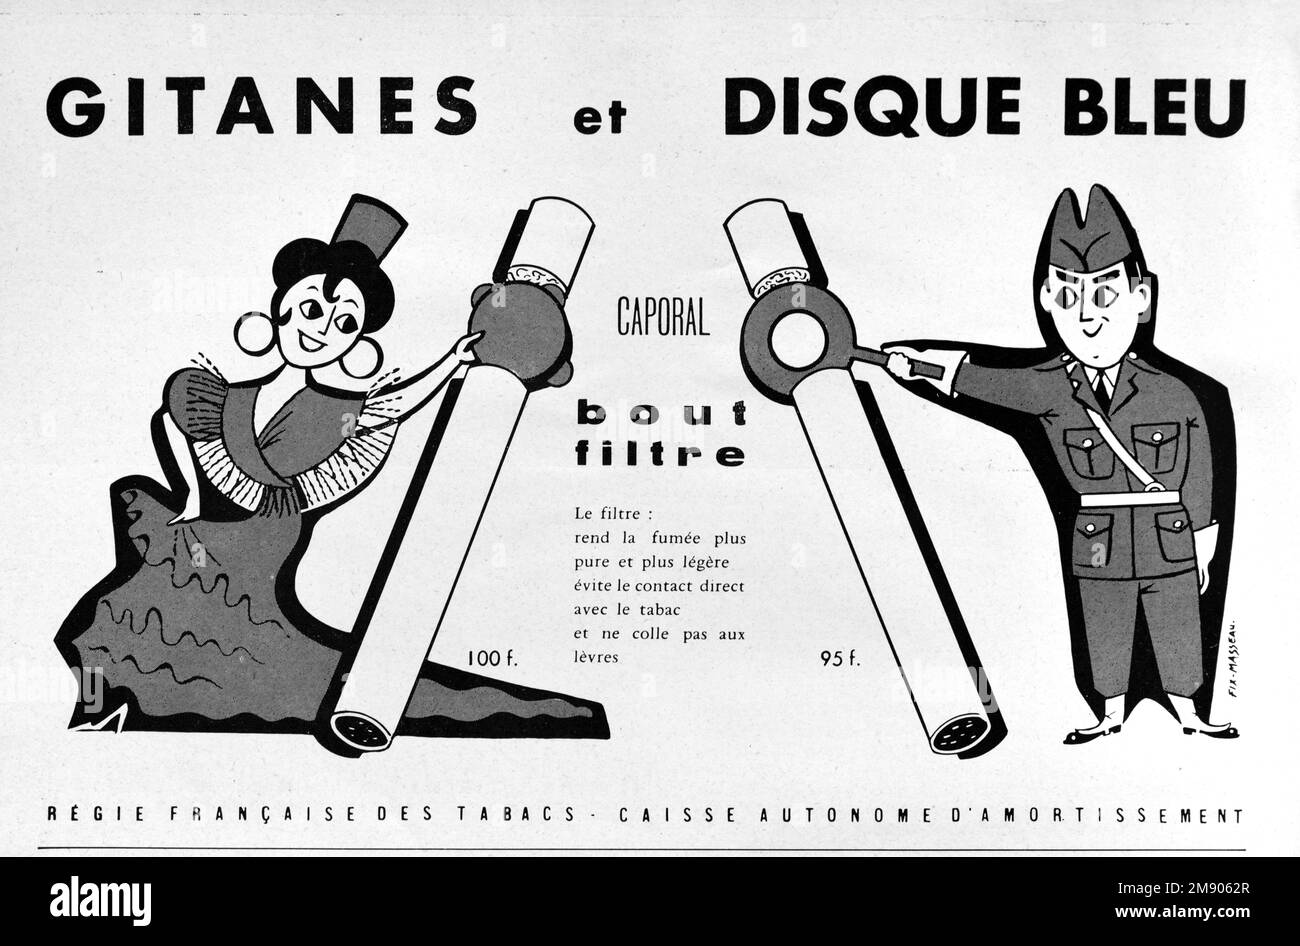 Vintage o Old Advert, Pubblicità, Pubblicità o Illustrazione per le sigarette Gitanes 1956. Illustrato con immagine di Donna zingara o Roma. Foto Stock